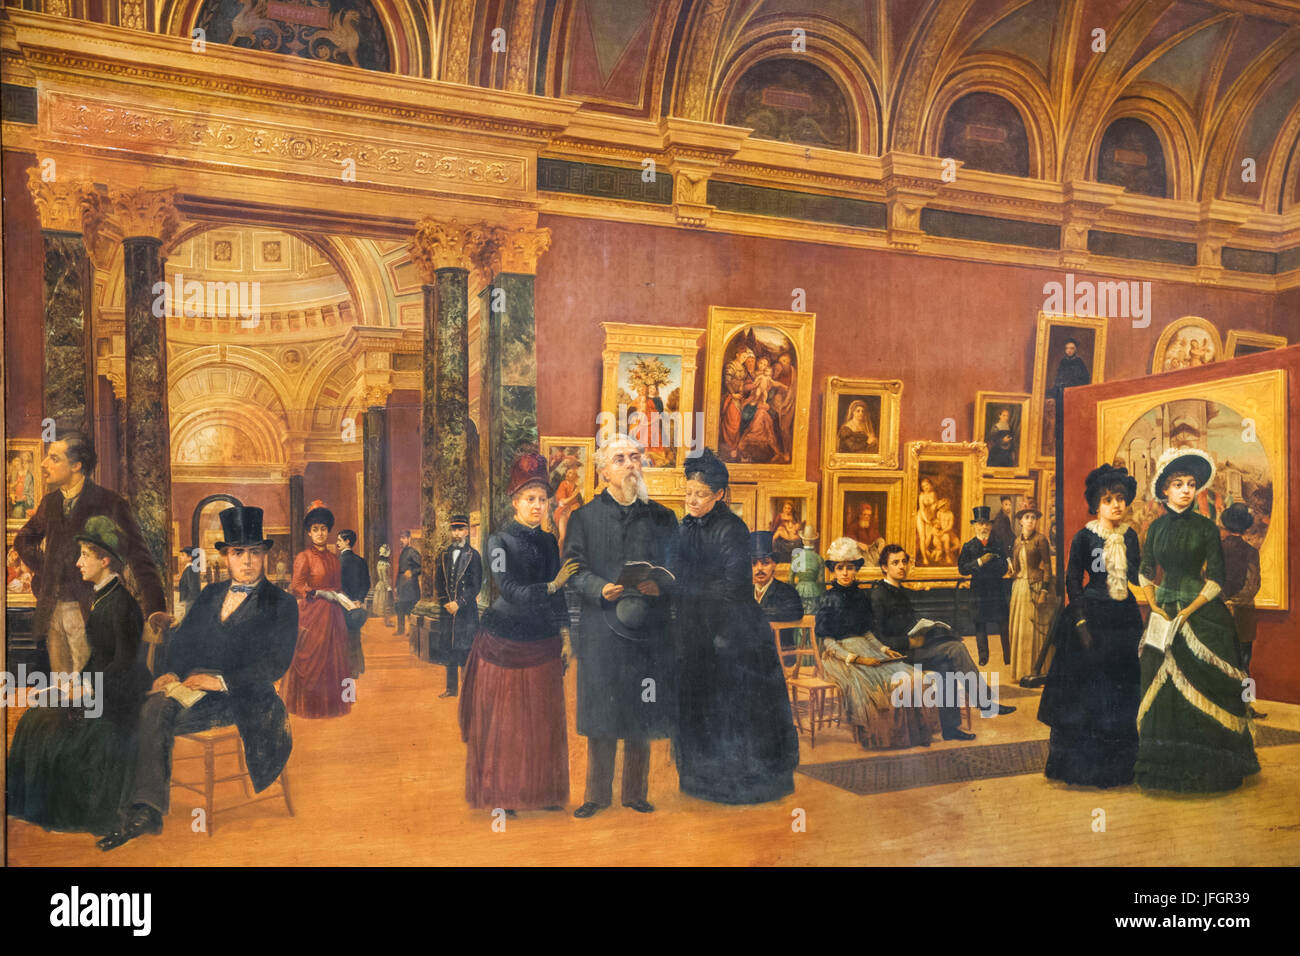 Inglaterra, Londres, Trafalgar Square, la National Gallery, La Galería Nacional de Pintura 1886 por Giuseppe Gabrielli Foto de stock